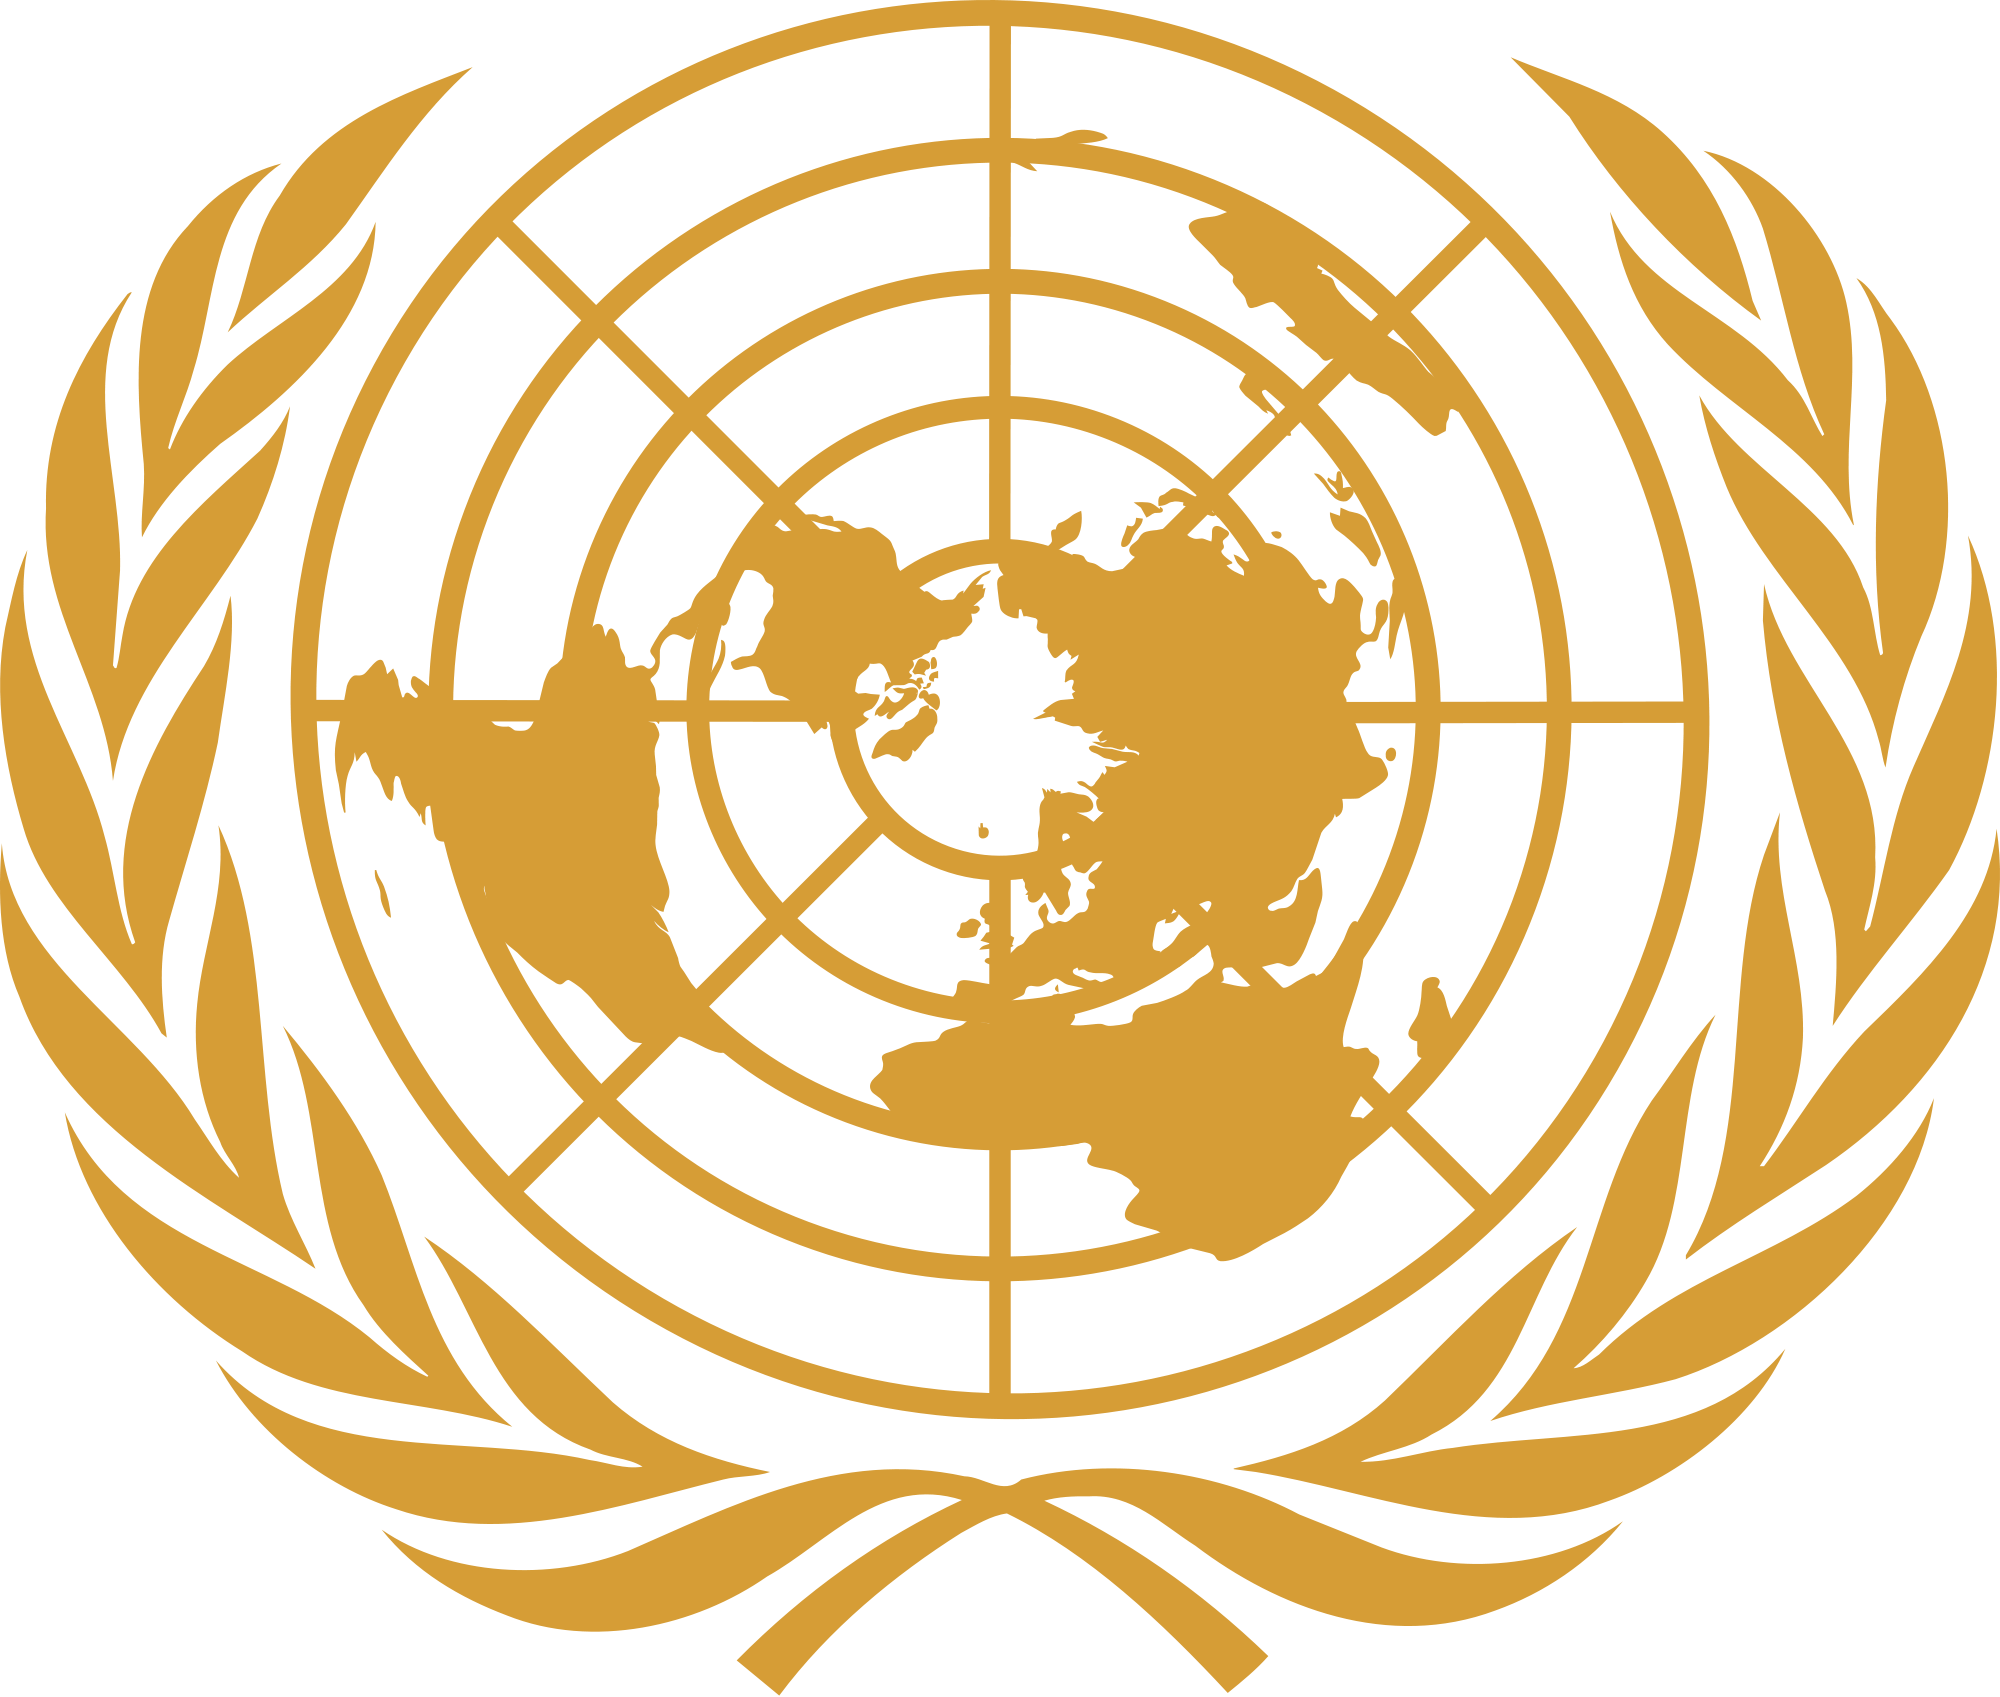 Orange and Gold Logo - UN emblem gold.svg